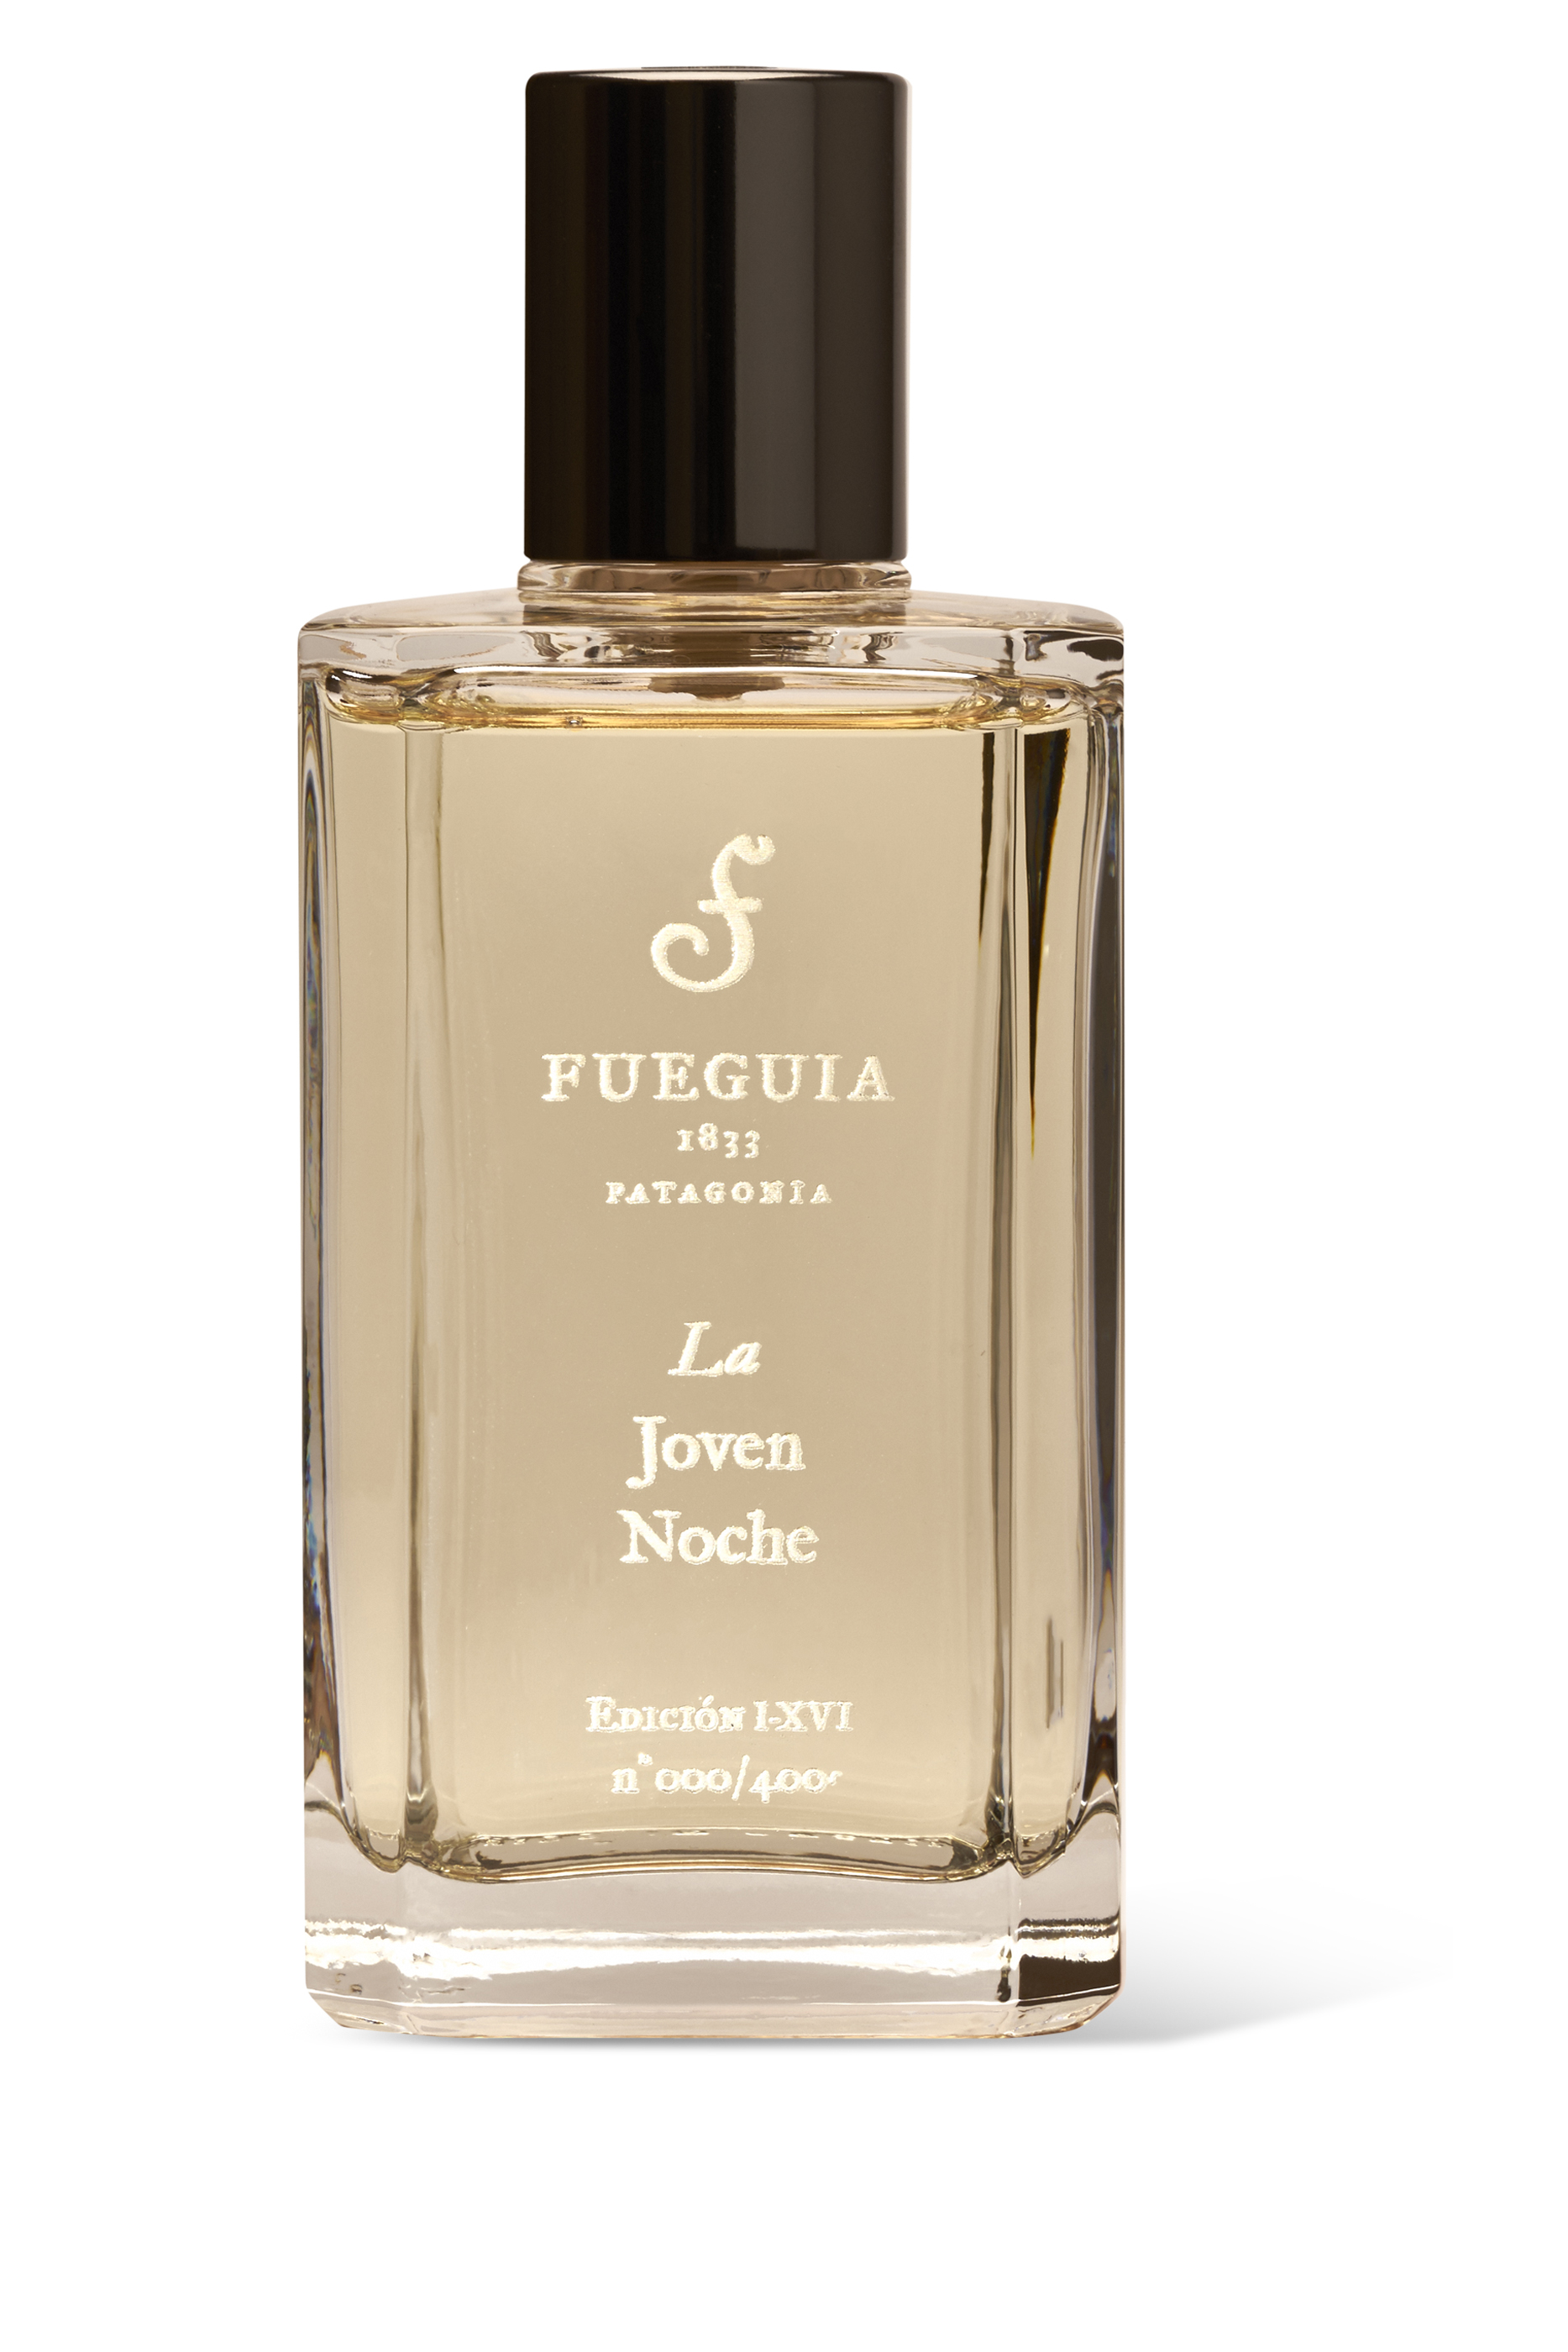 Buy Fueguia 1833 La Joven Noche Eau de Parfum for Unisex